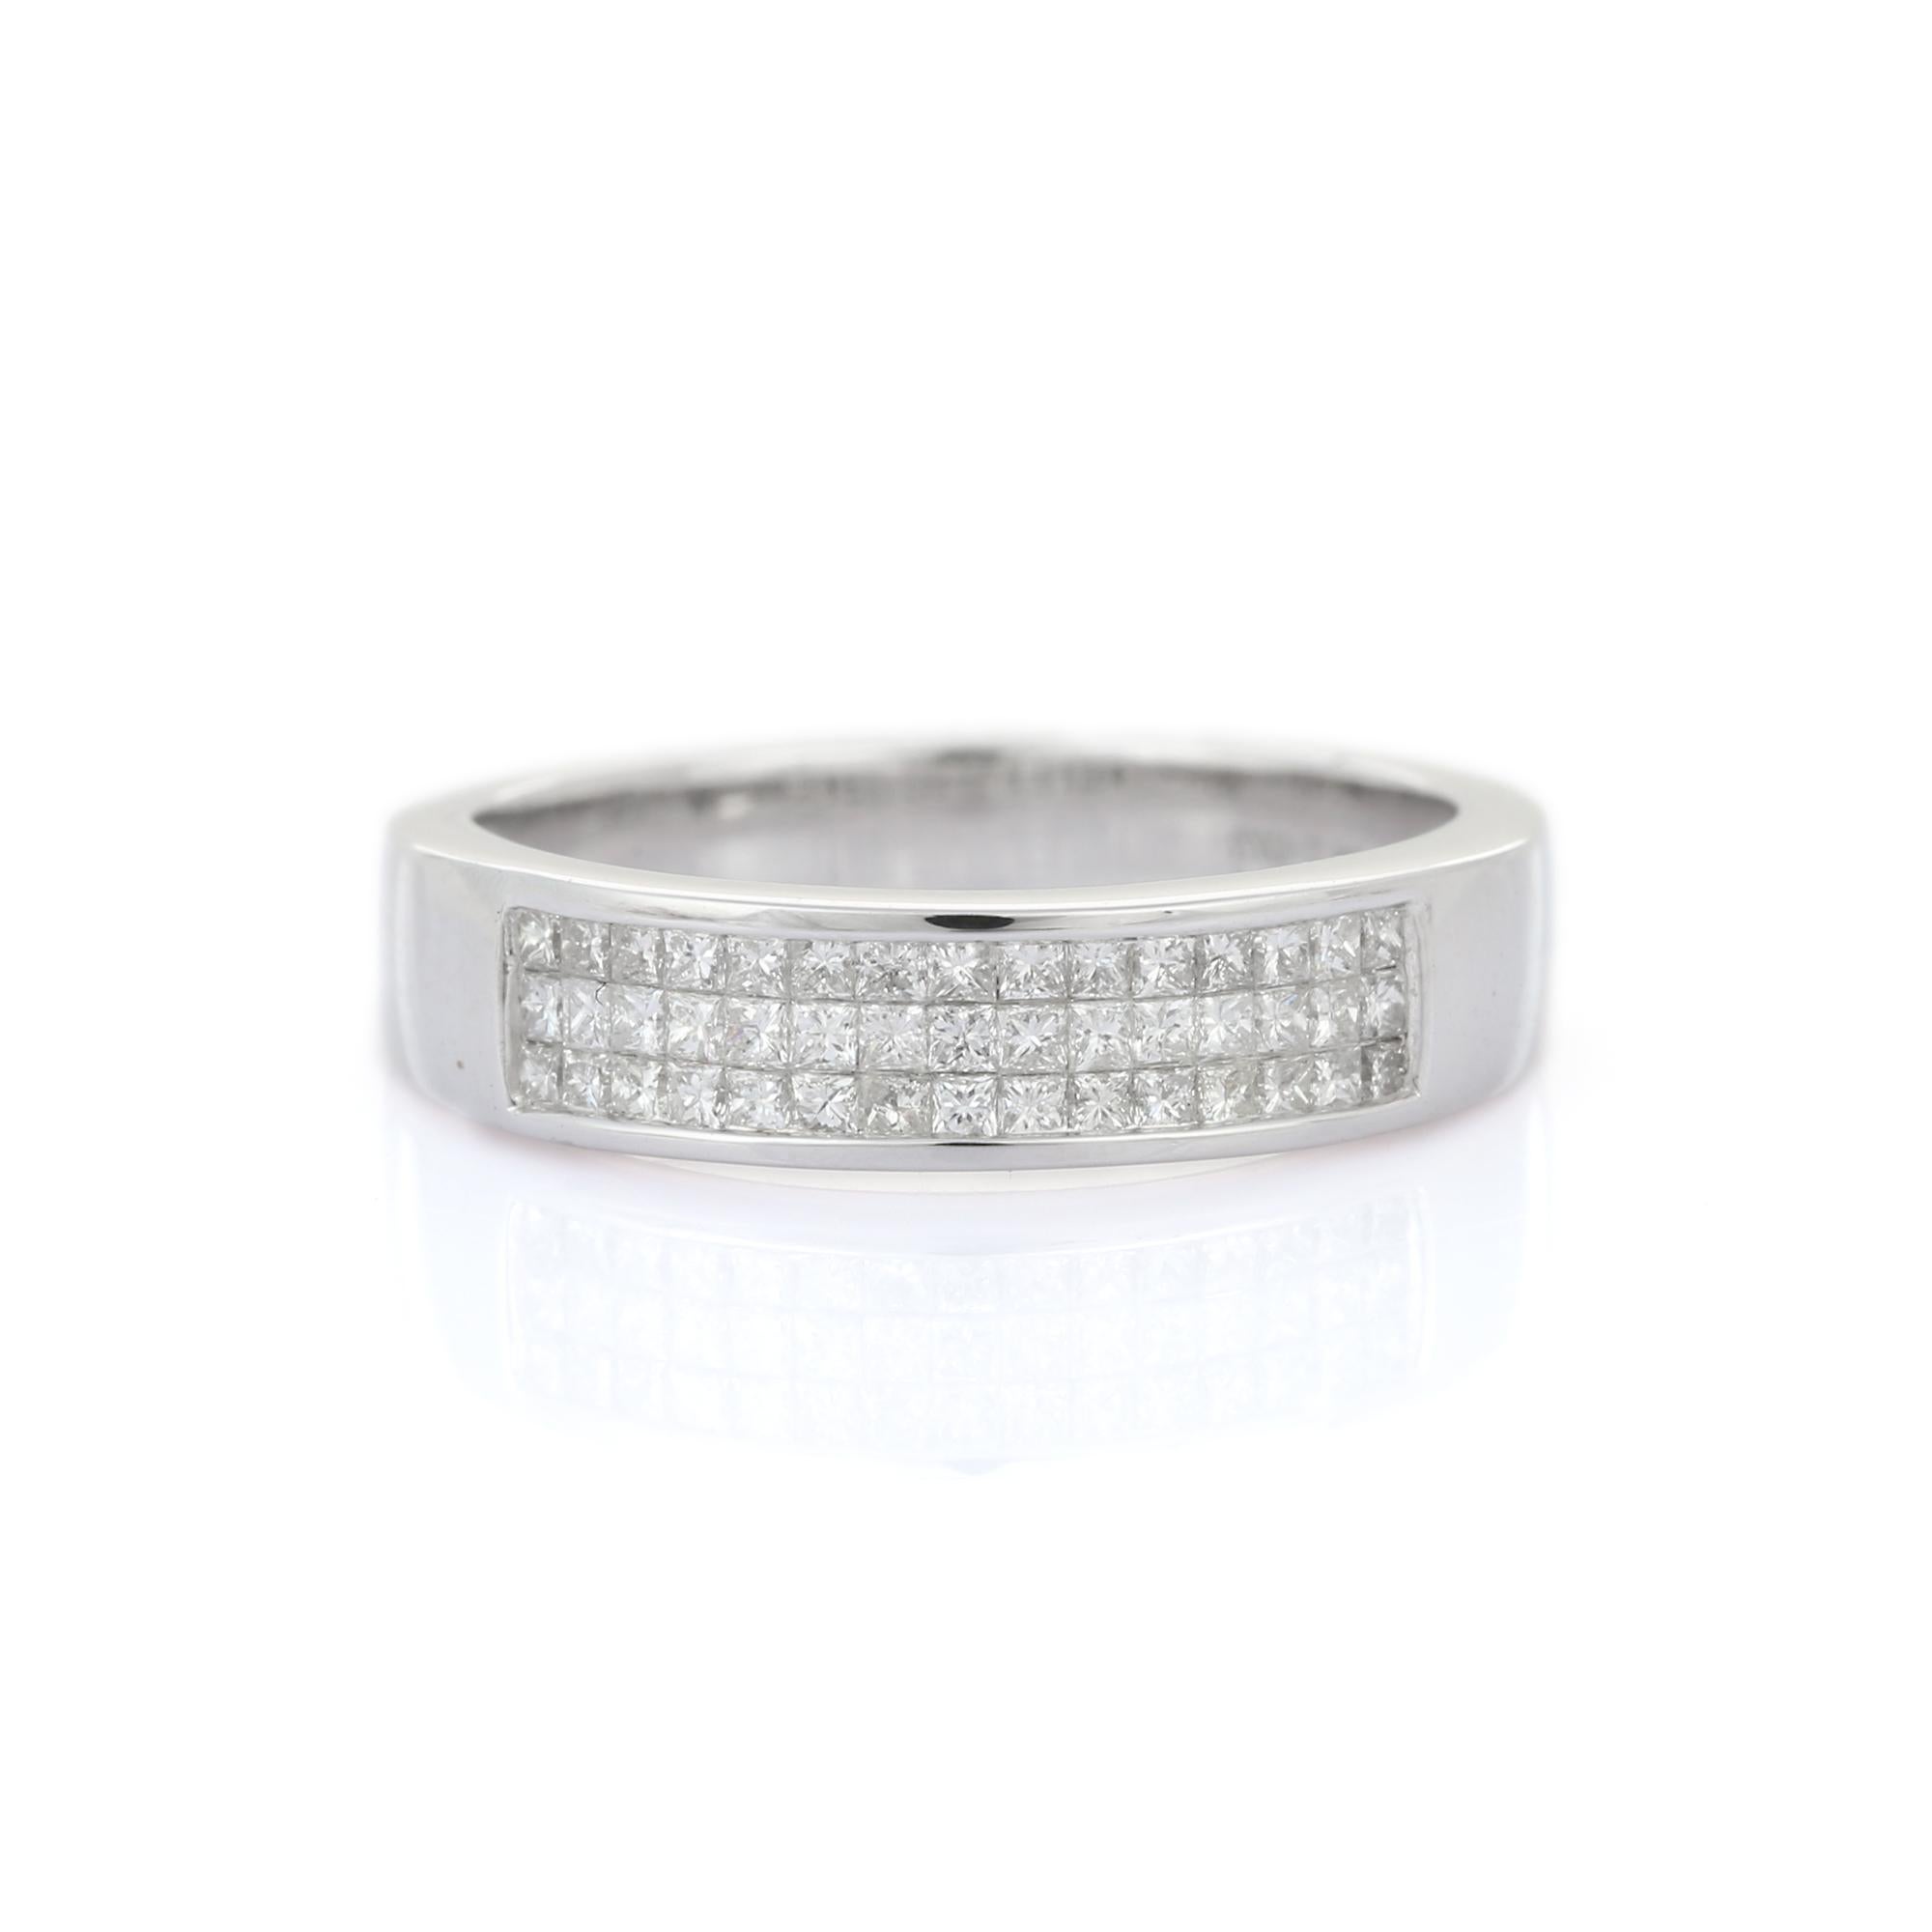 Natural Diamond Engagement Band Ring in 18 Karat White Gold